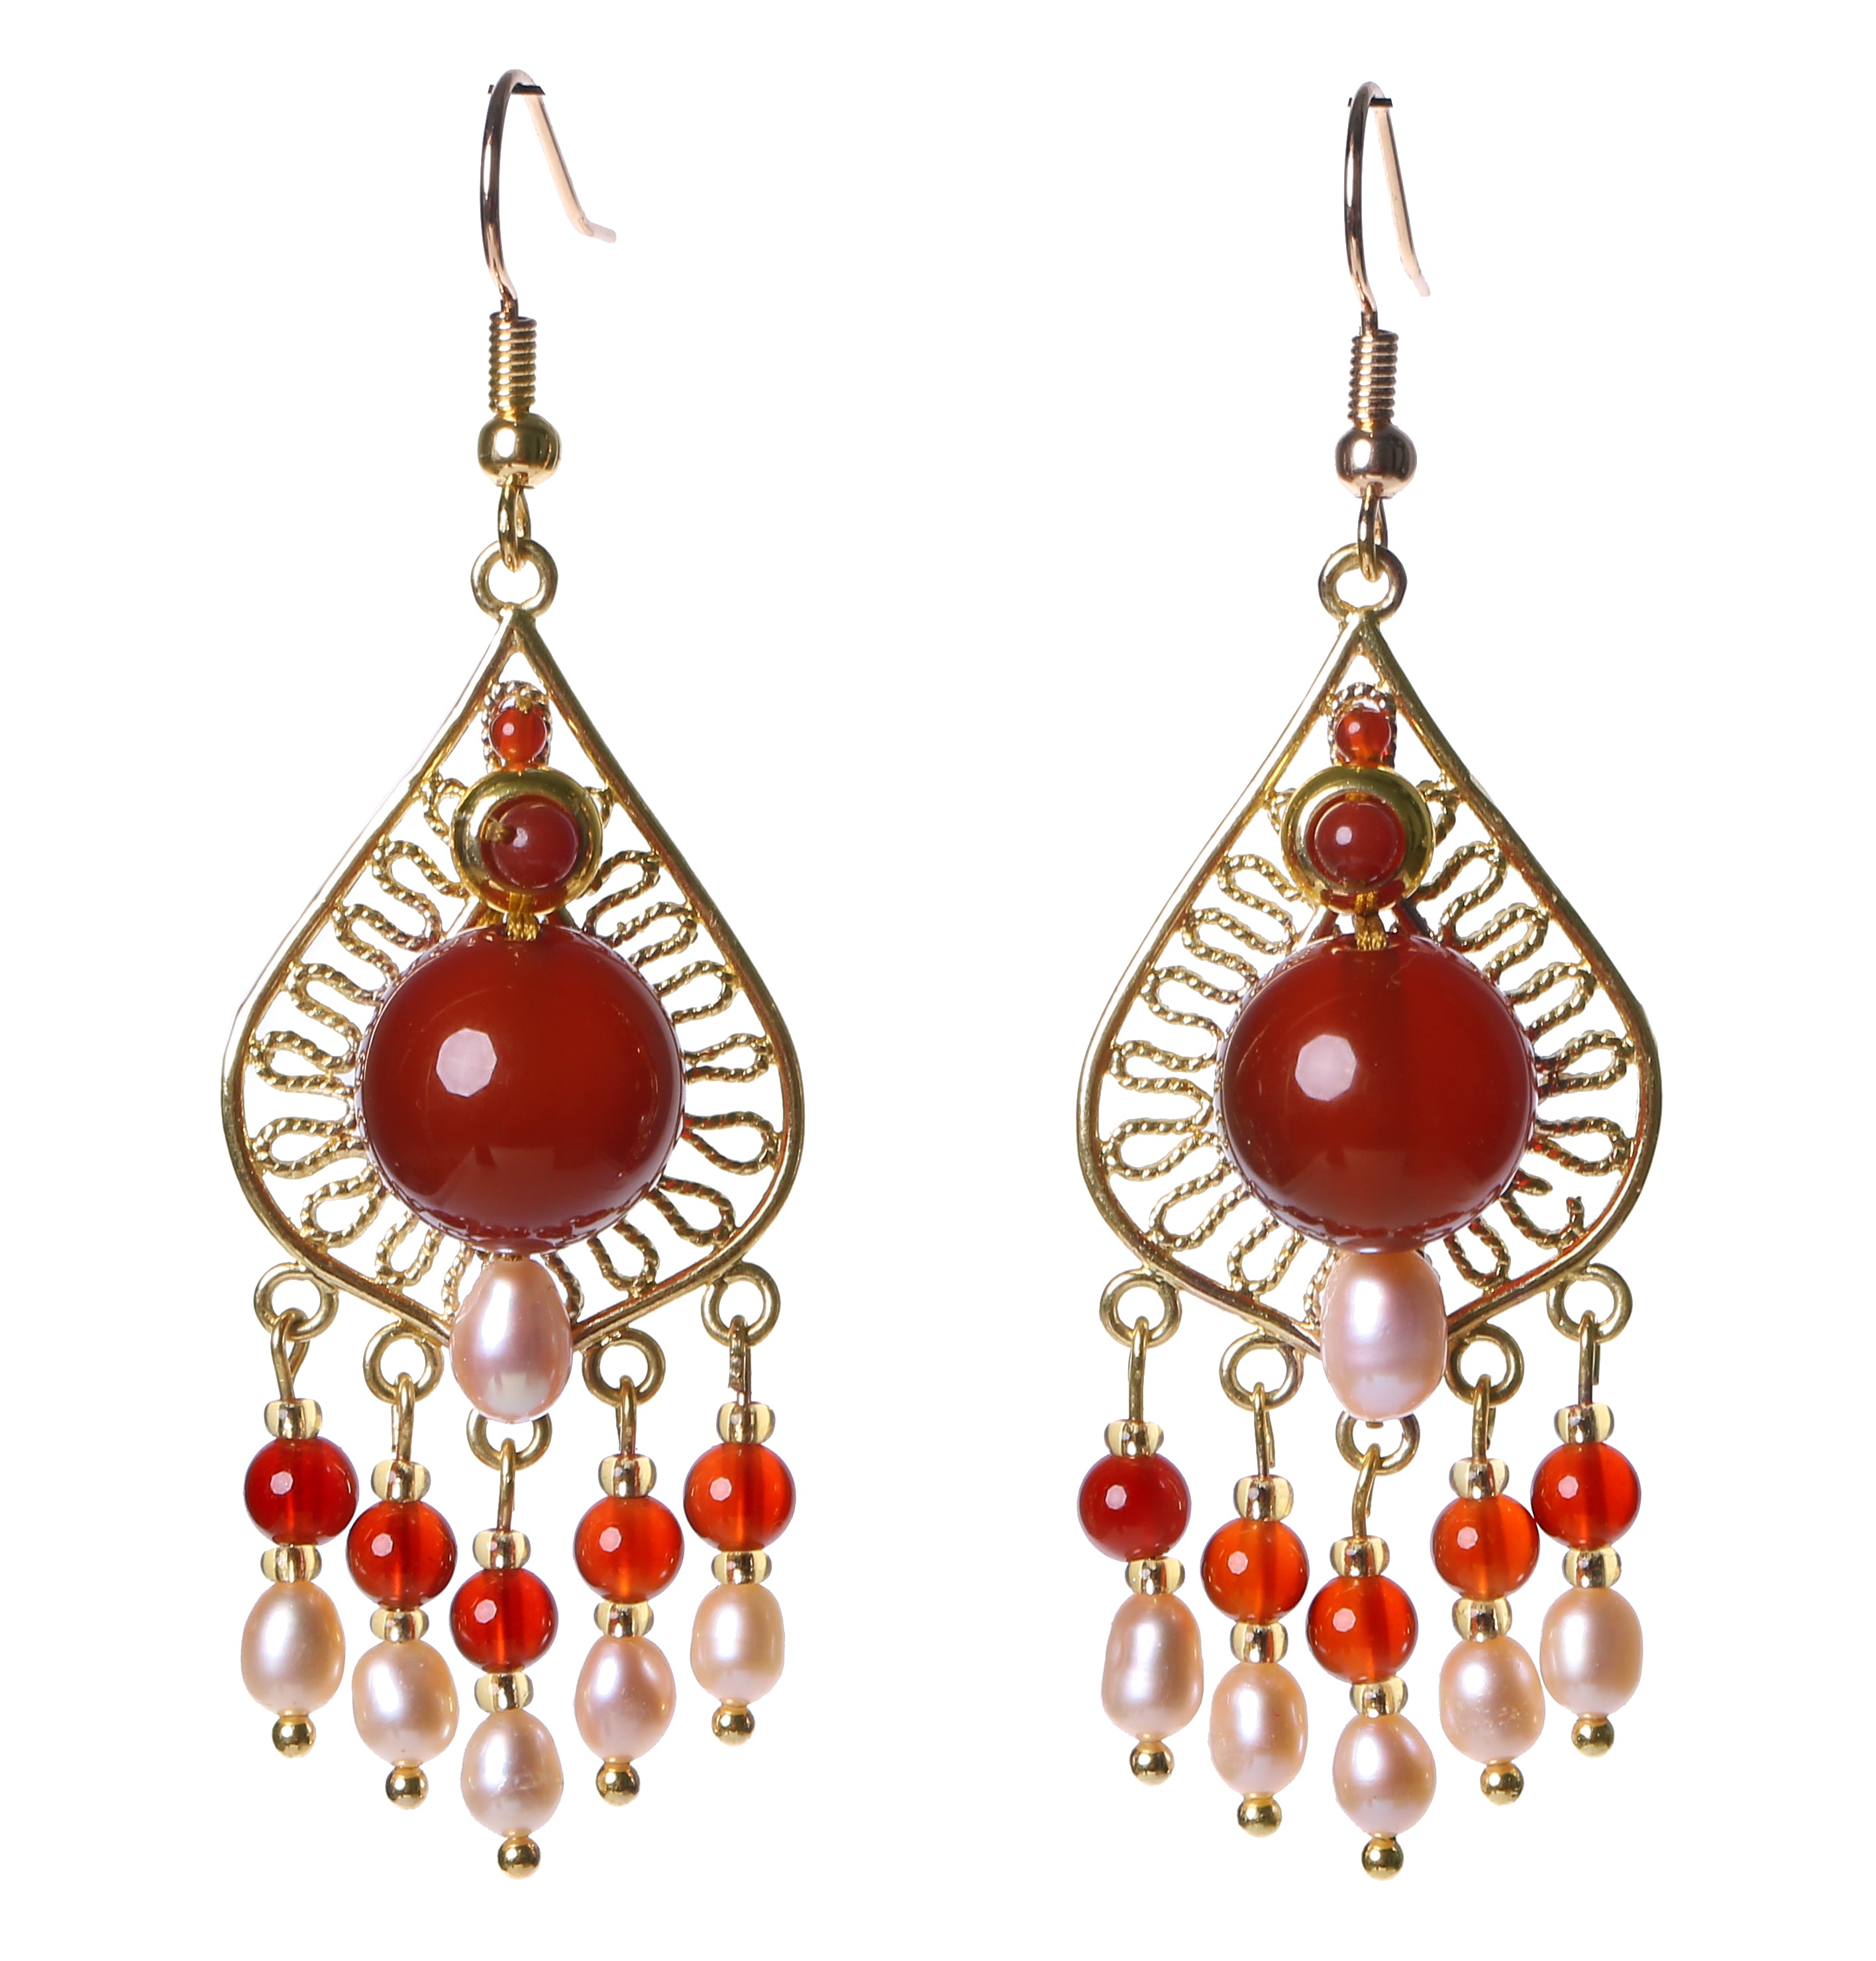 Retro Elegant Ethnic Red Agate Earrings